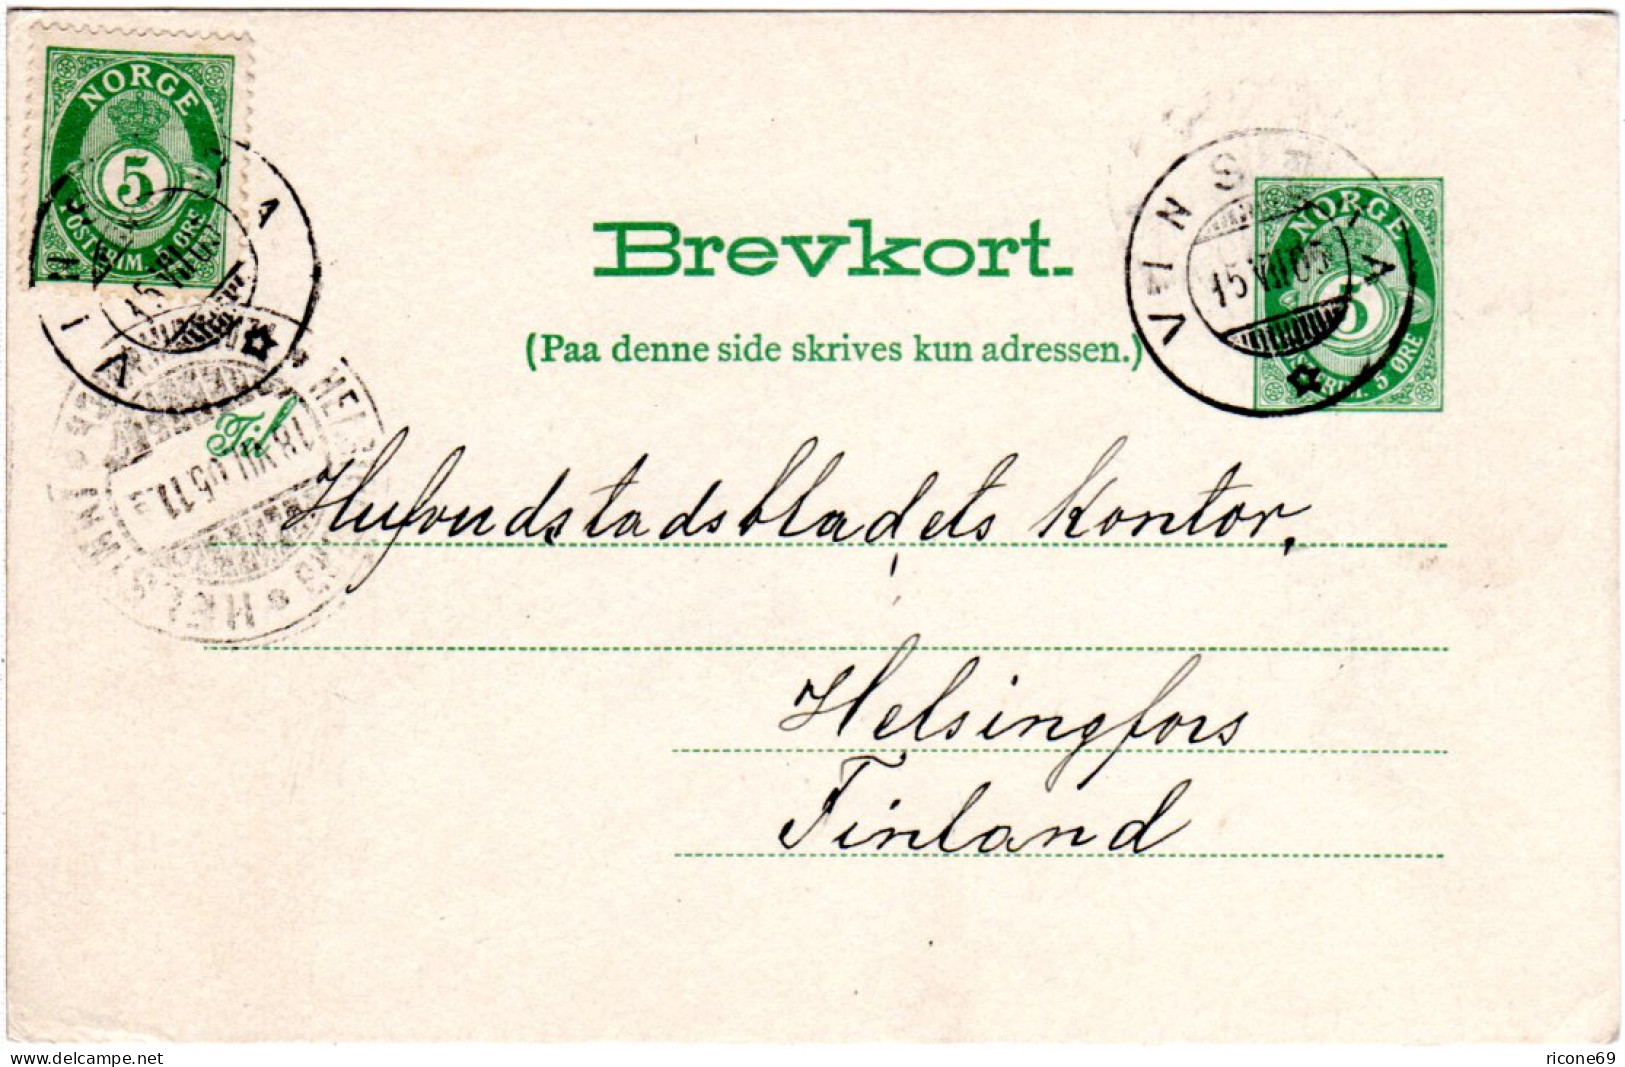 Norwegen 1905, 5 öre Zusatzfr. Auf 5 öre Ganzsache V. VINSTRA N. Finnland - Covers & Documents